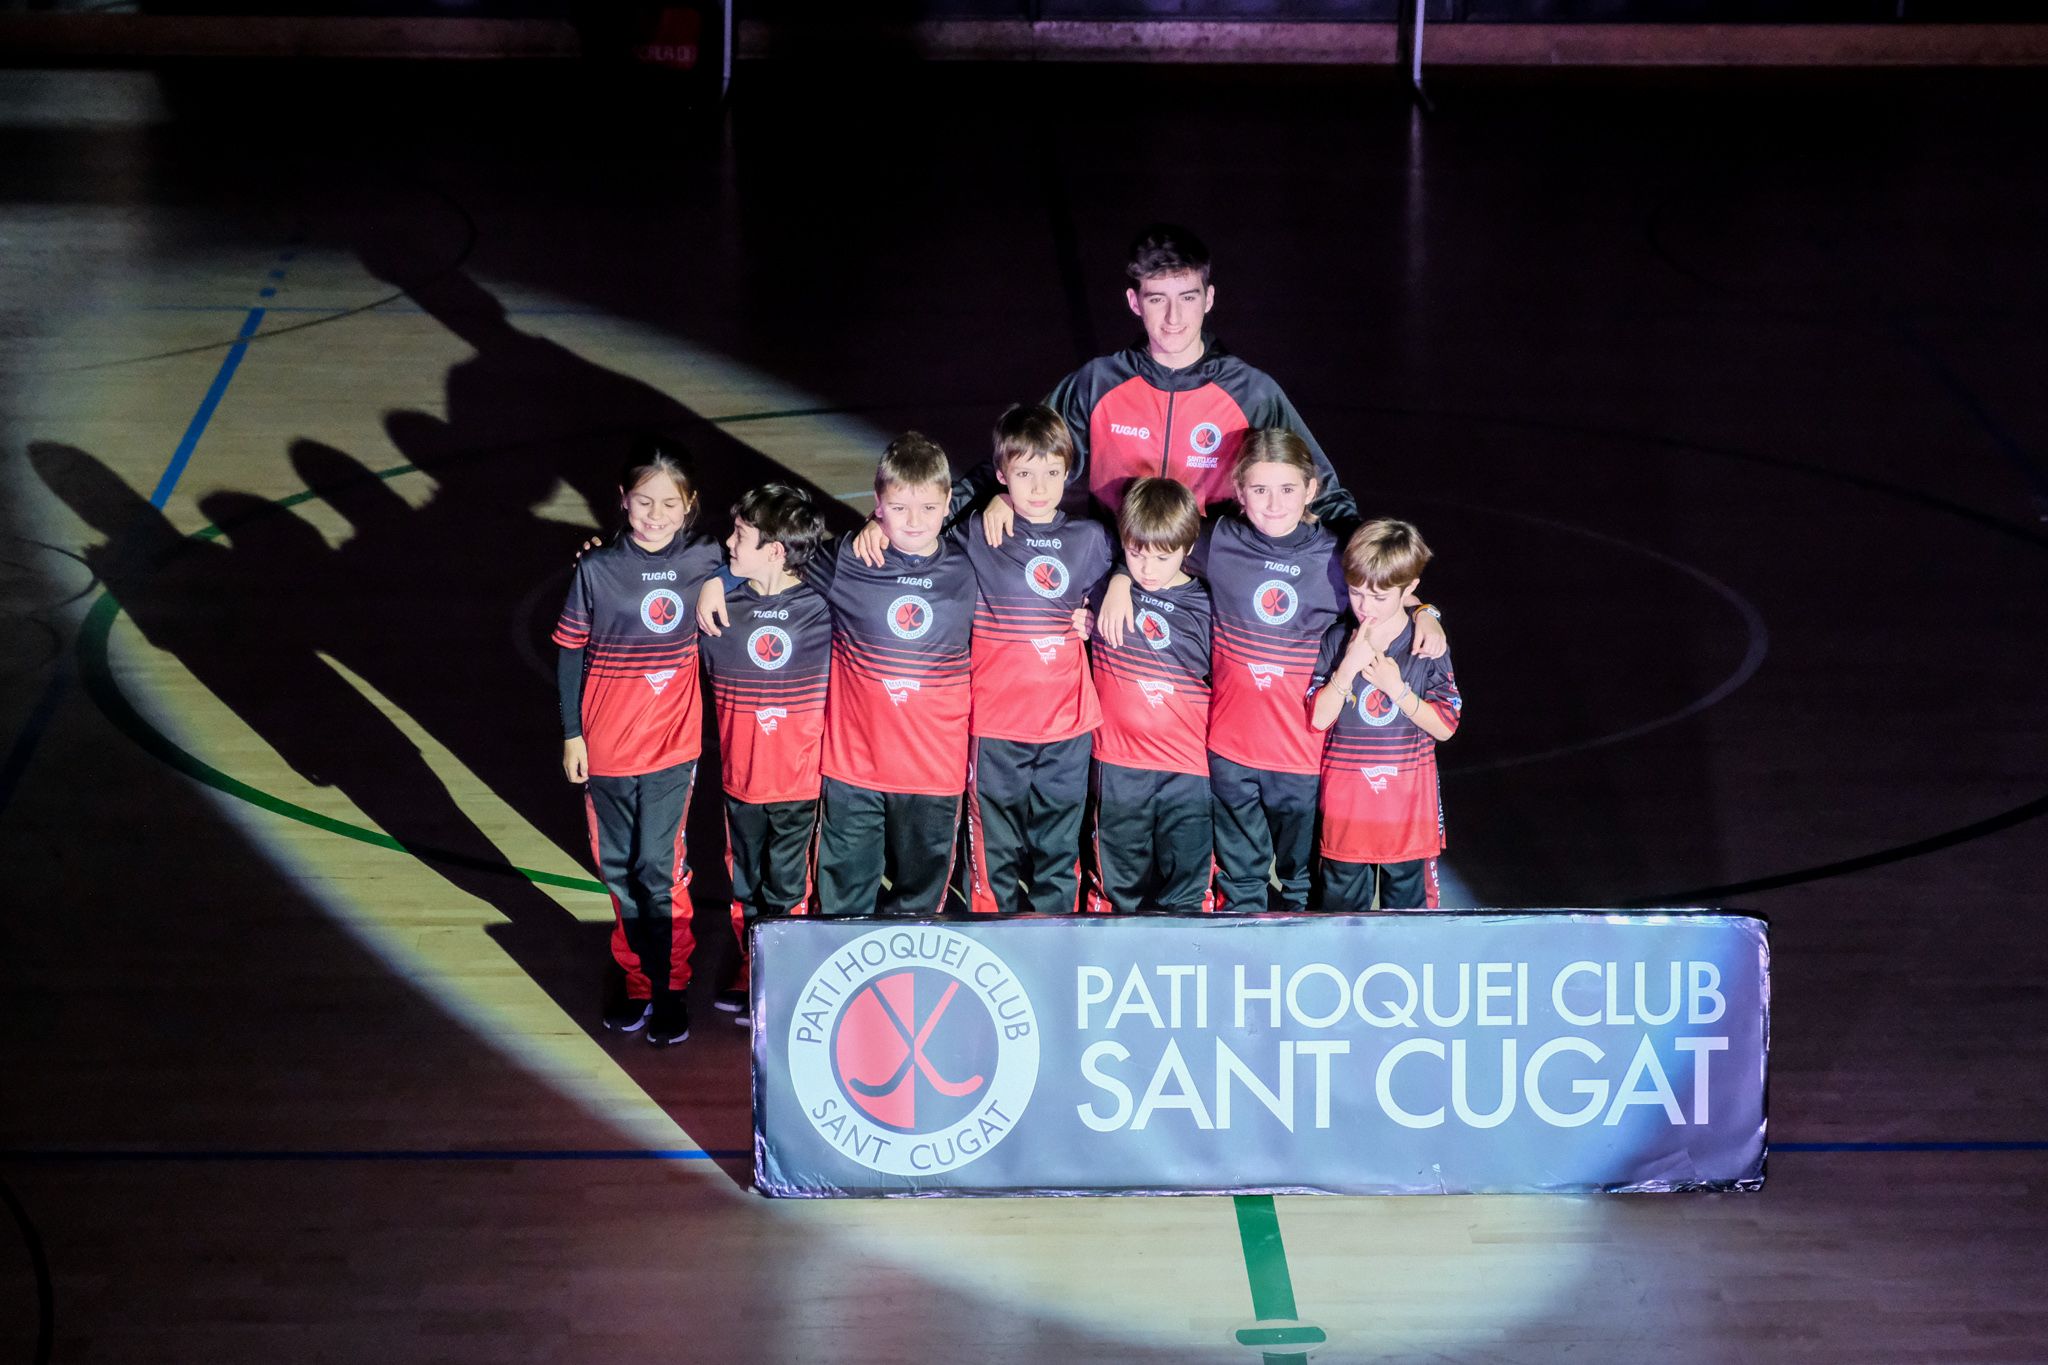 Presentació dels equips del Patí Hoquei Club Sant Cugat. FOTO: Ale Gómez